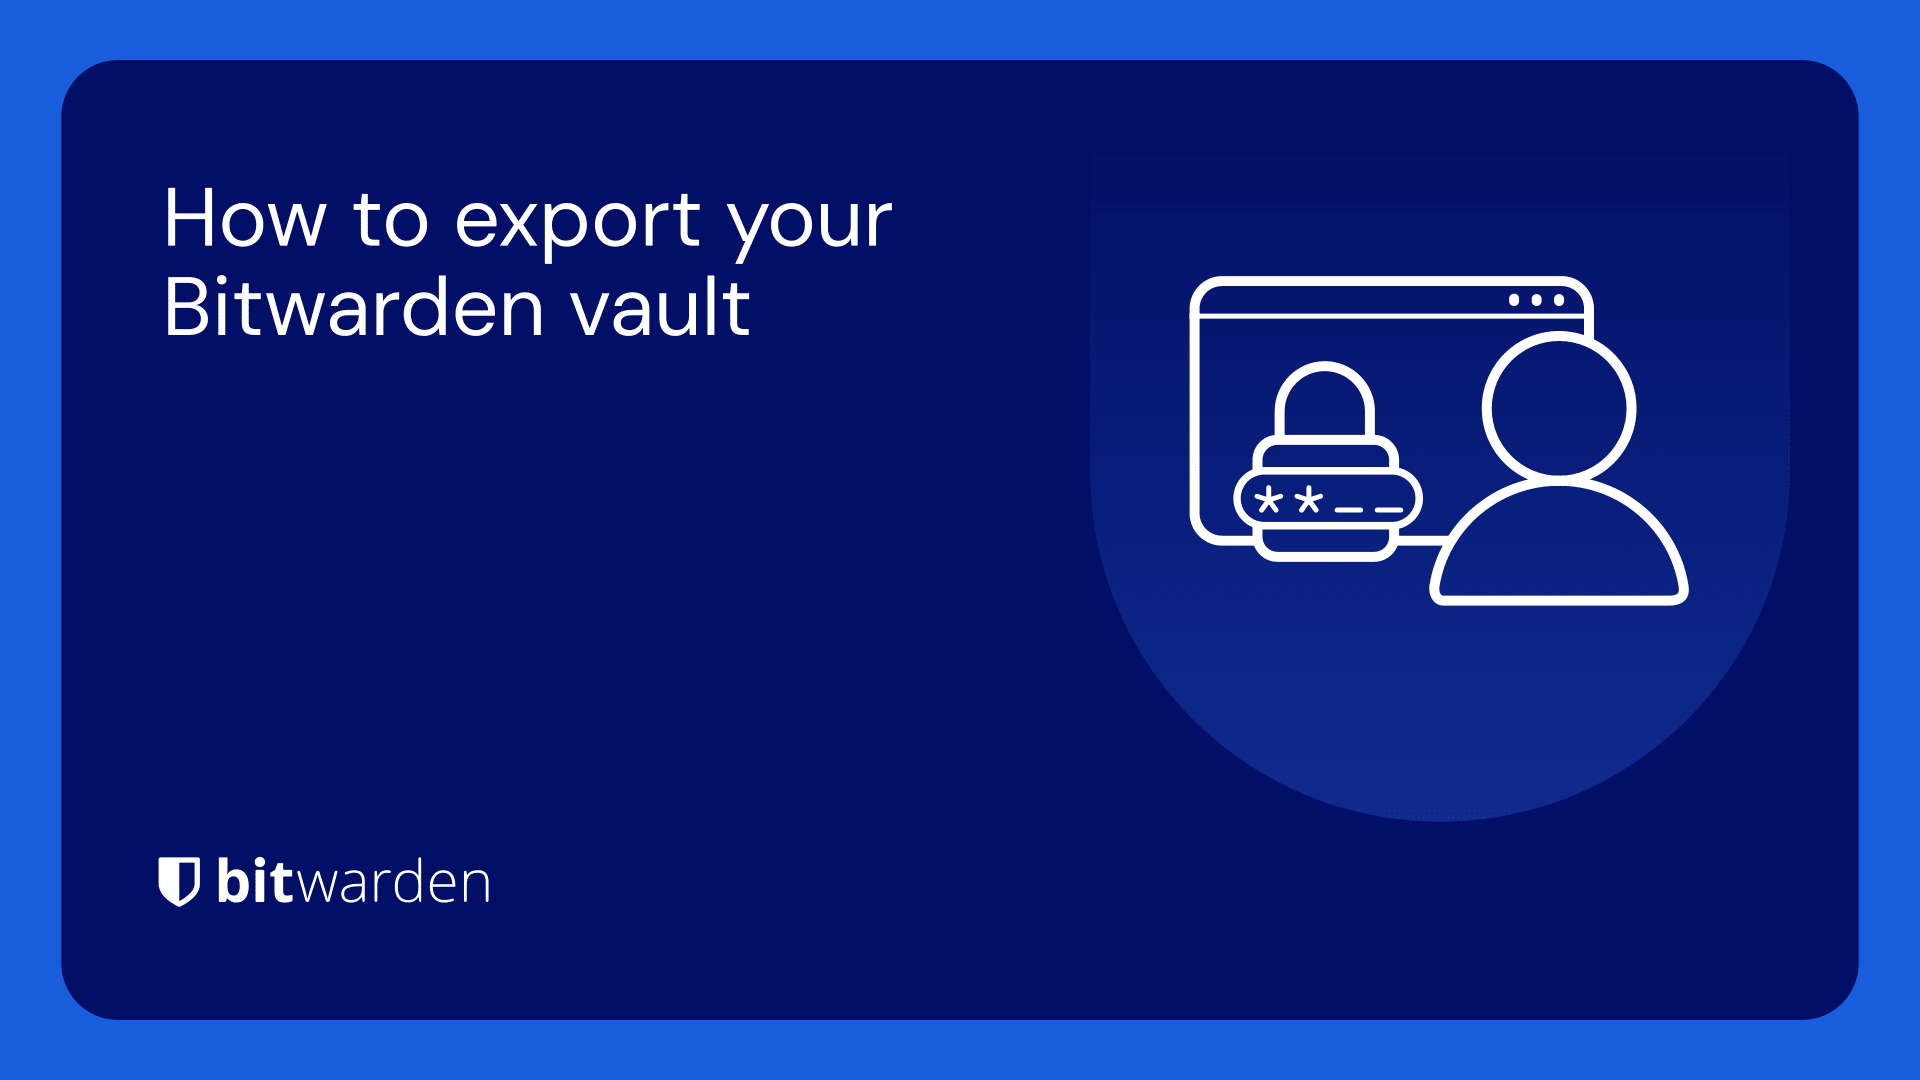 How to export your Bitwarden vault